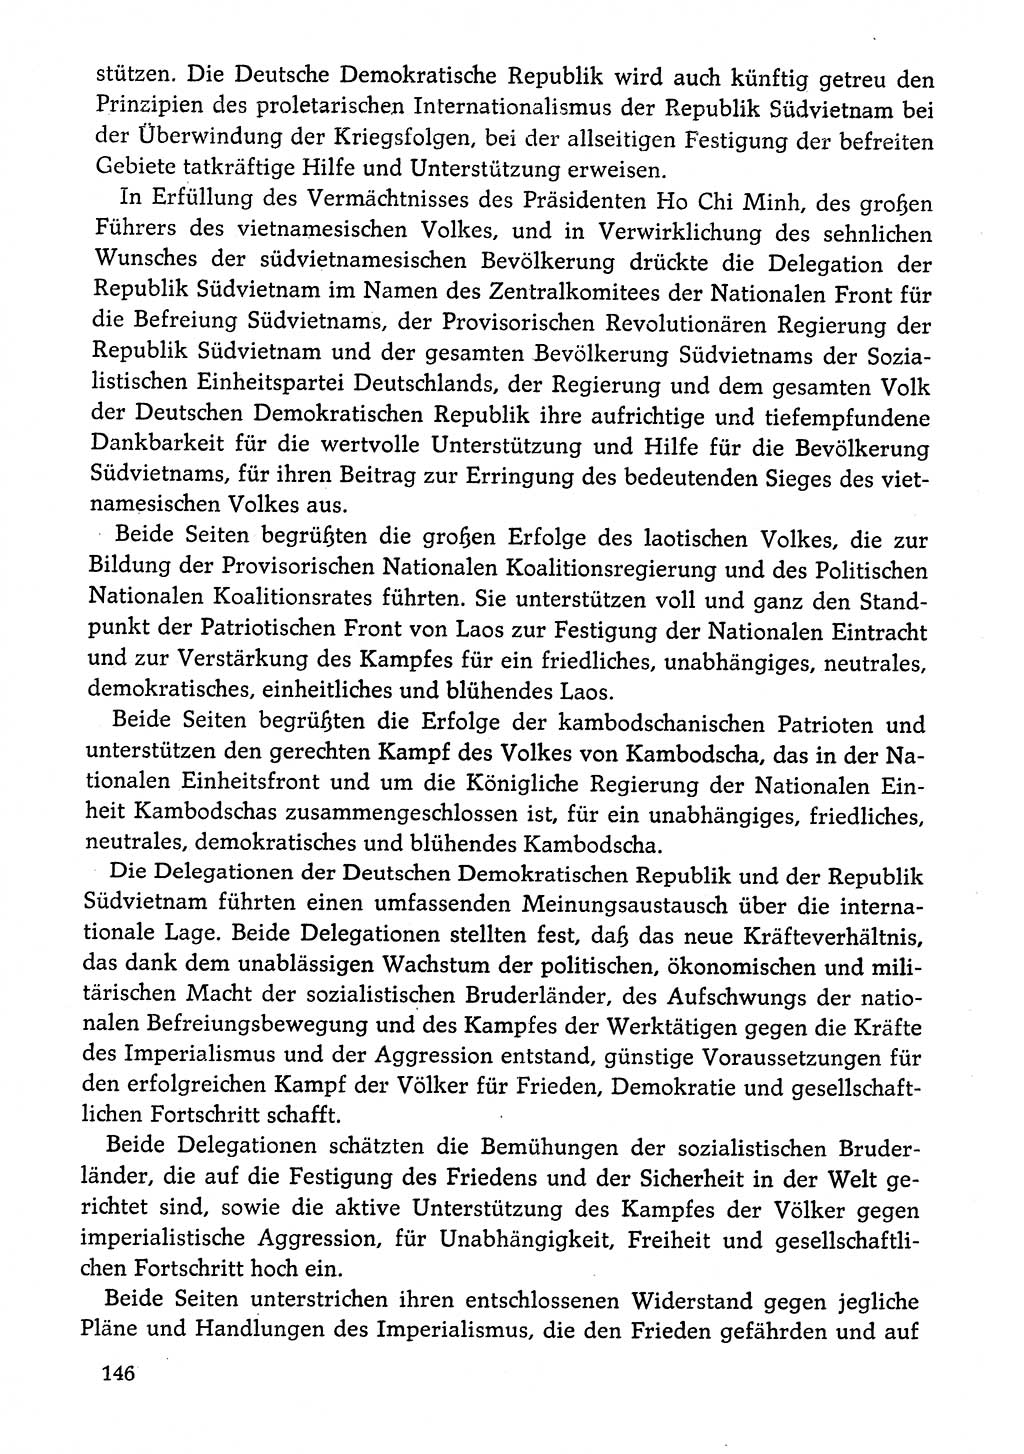 Dokumente der Sozialistischen Einheitspartei Deutschlands (SED) [Deutsche Demokratische Republik (DDR)] 1974-1975, Seite 146 (Dok. SED DDR 1978, Bd. ⅩⅤ, S. 146)